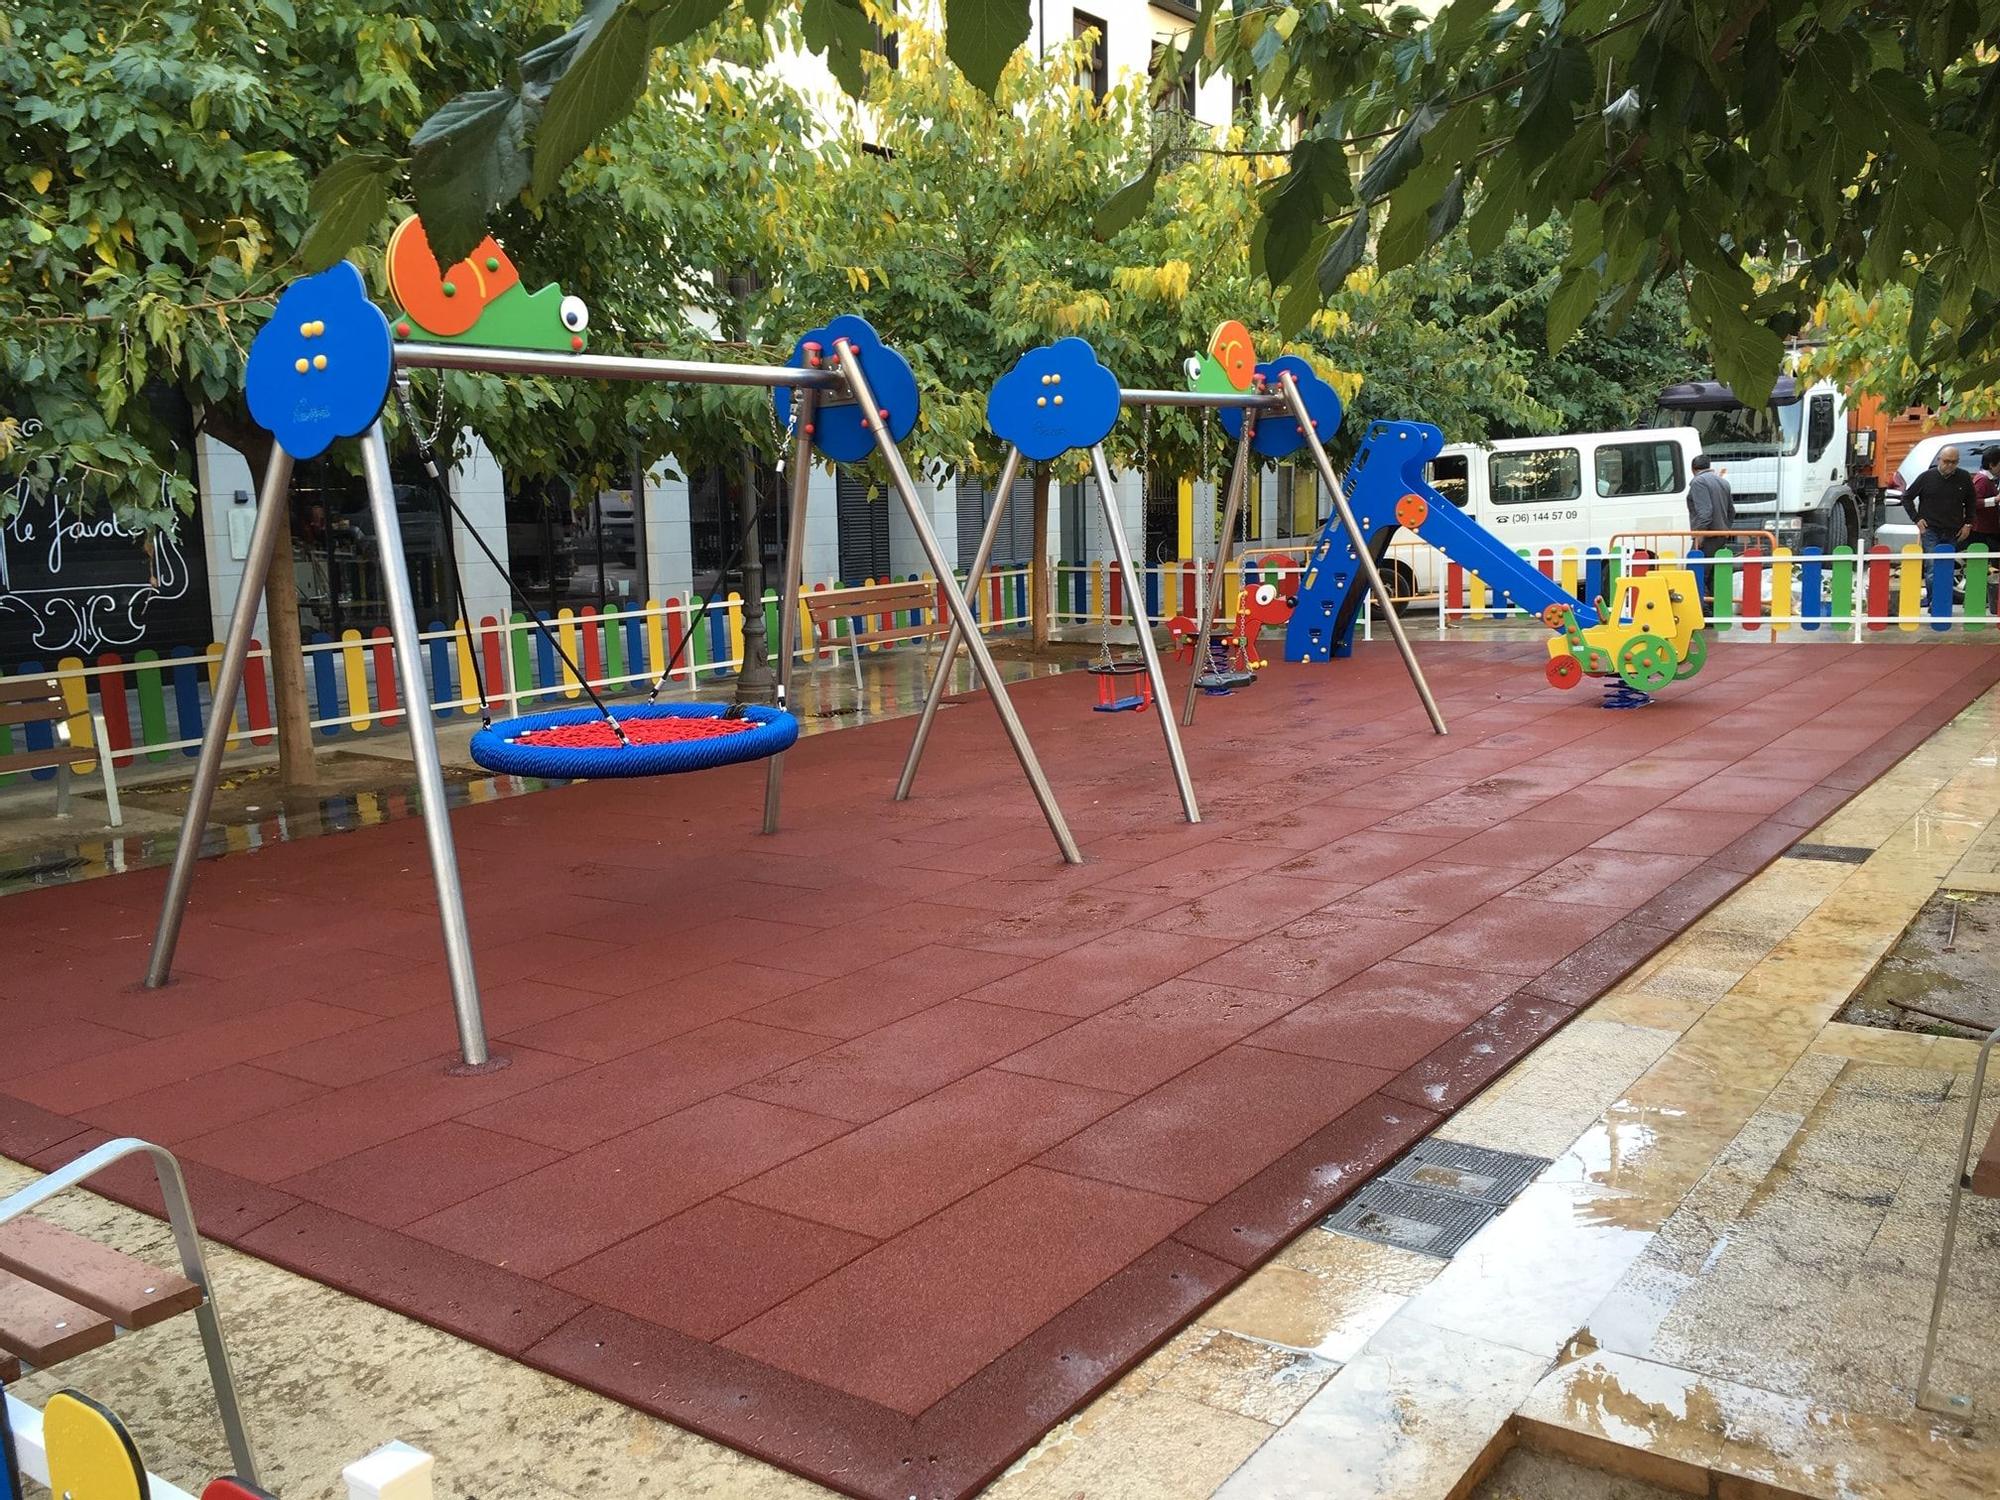 Remodelado integralmente el parque infantil Vallezate – Ayuntamiento de  Valencia de Don Juan